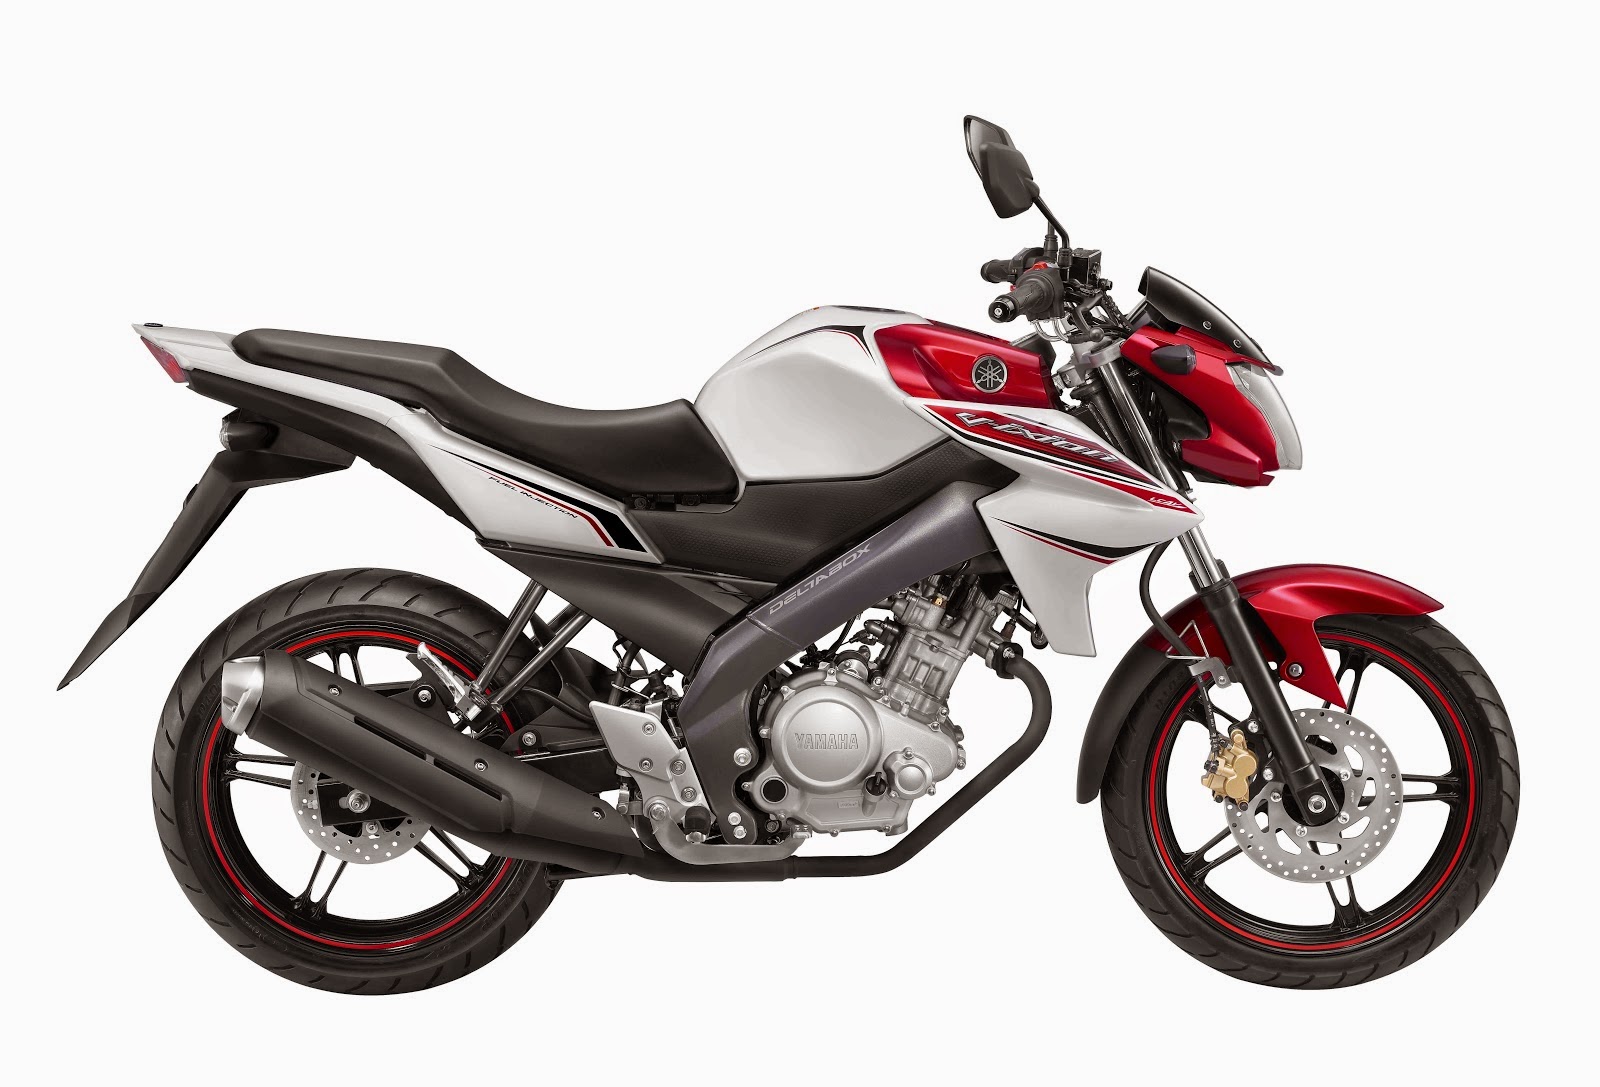 Harga Motor Yamaha Vixion Terbaru Desember 2014 OtoTeknoZcom